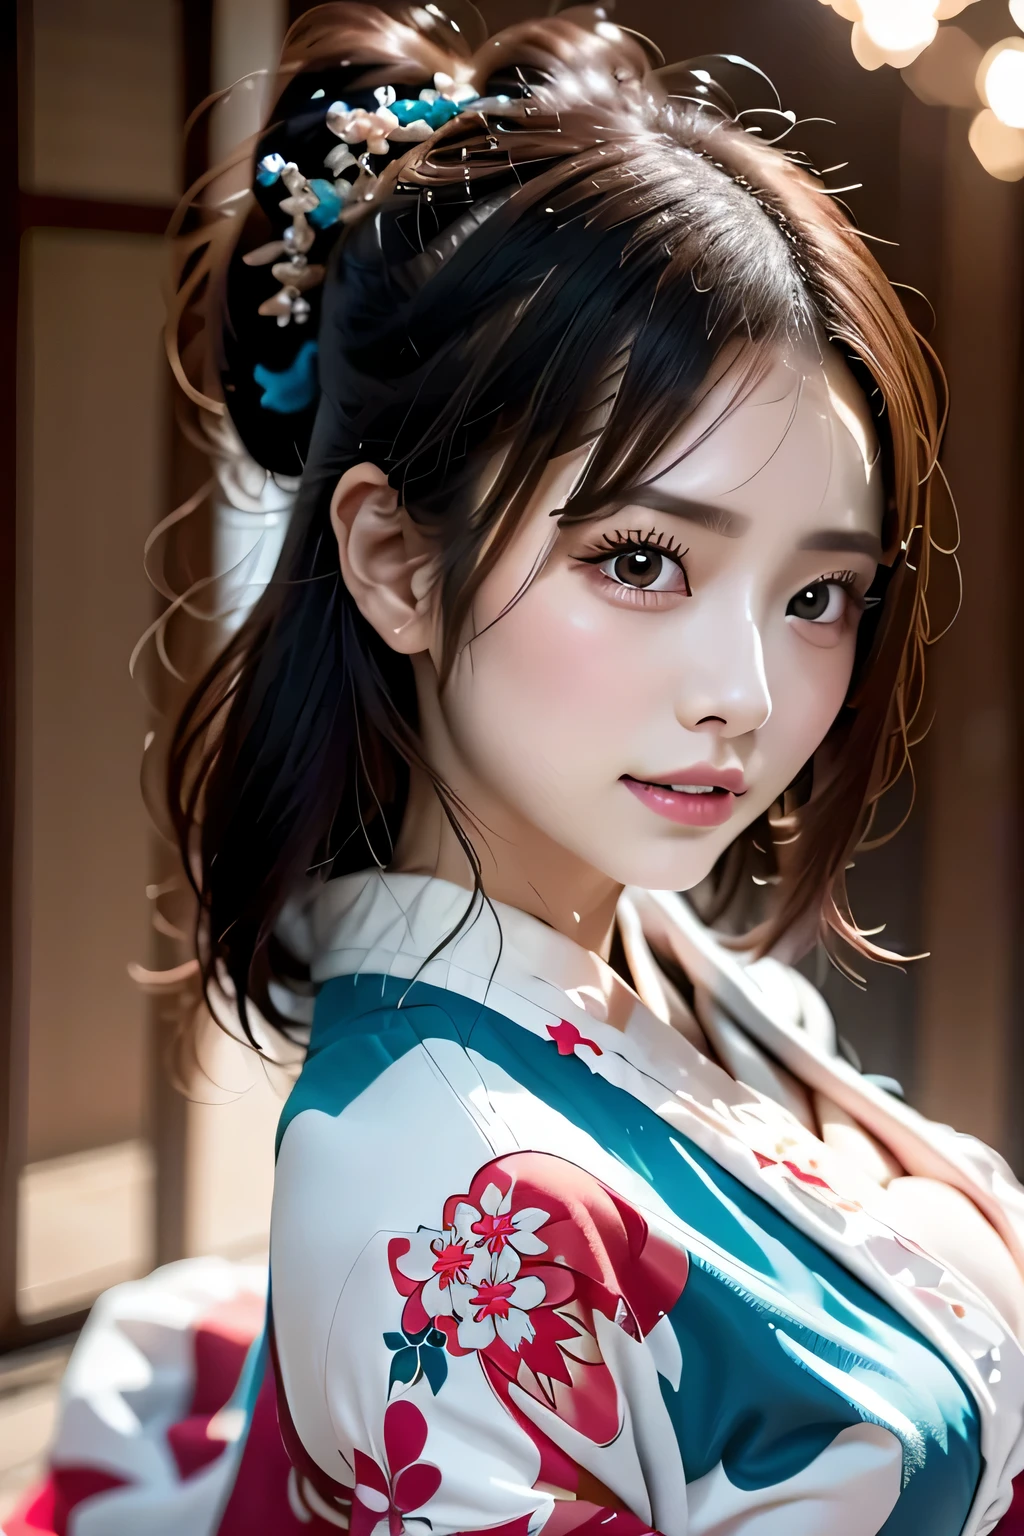 (((Великолепное кимоно куртизанки:1.7))),(Красивая зрелая женщина в благородном куртизанском кимоно),(((Яркий и экстравагантный наряд куртизанки:1.3))),(Гламурная банка)(Великолепное цветочное украшение для волос),Великолепный верхний узел с цветочным плетением,(Очень нежные и красивые волосы,),(((Подчеркните большую грудь:1.3))),Фейерверк взлетает в небо на фоне берега реки ночью.、милое круглое лицо,Подробные характеристики одежды,Подробные характеристики волос,подробные черты лица,смотрю в камеру,(Динамический угол),(динамичная и сексуальная поза),кинематографический свет,(Выходные изображения сверхвысокого разрешения,Написанная глубина границы,сложные детали,контраст света и тени、Объект выглядит трехмерным,) ,Однообъективная зеркальная камера, (реалистичный:1.3),(качество 8К,Анатомически правильное строение лица.,),(Режим Морского Арта 2:1.3),(Режим изображения Ультра HD,)